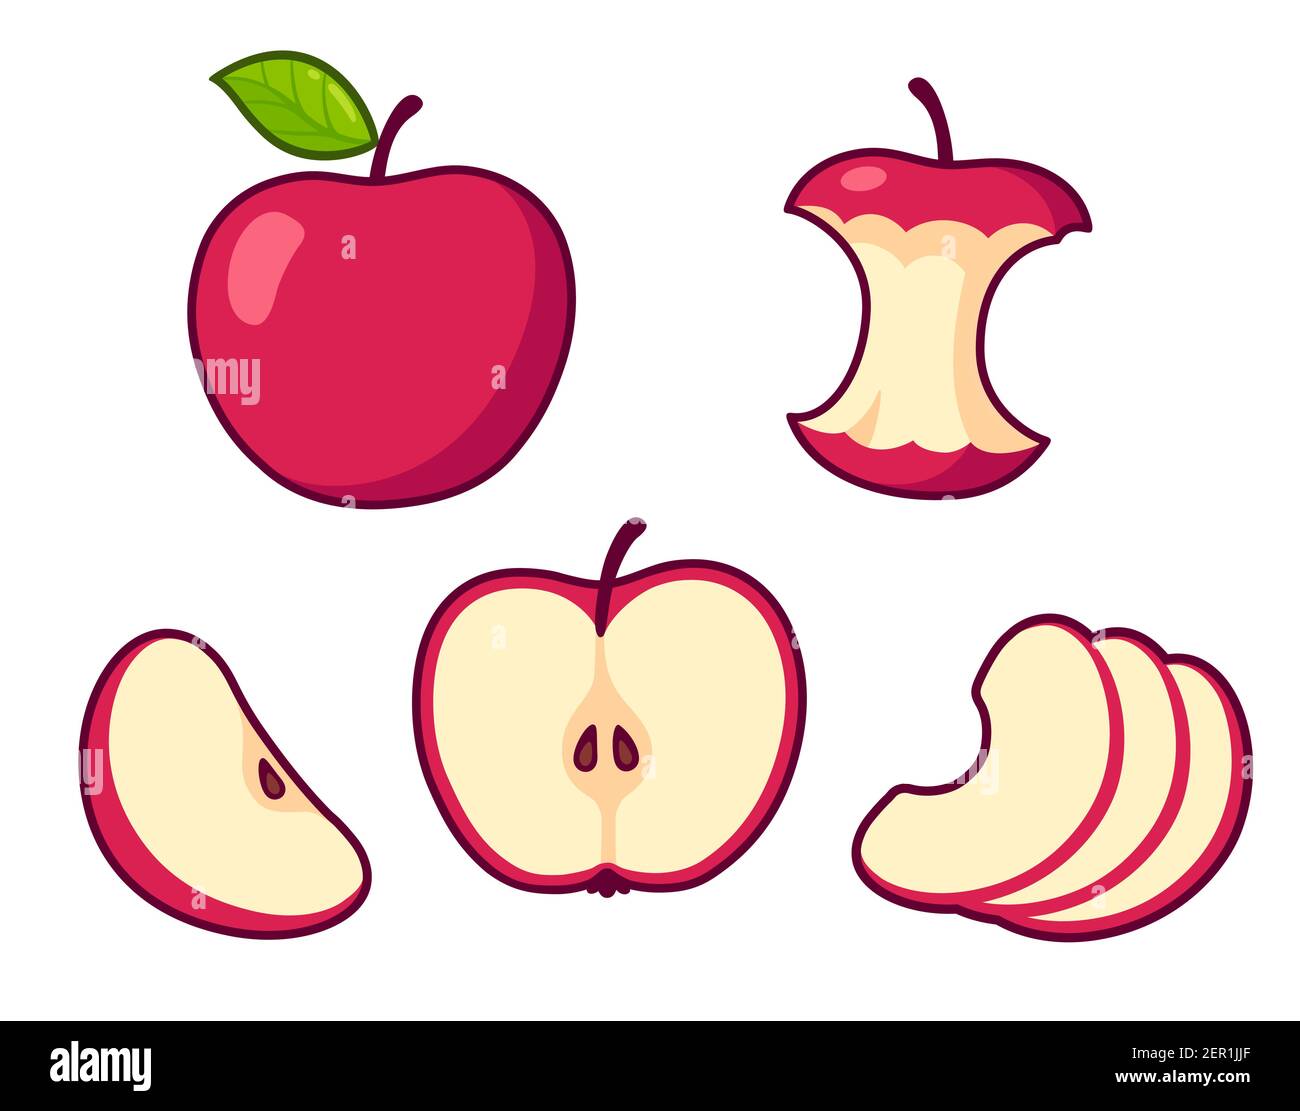 Ensemble de dessins animés aux pommes rouges. Fruits entiers et noyau, coupe transversale de pomme coupée, tranches. Illustration de clip art vectoriel isolée. Illustration de Vecteur